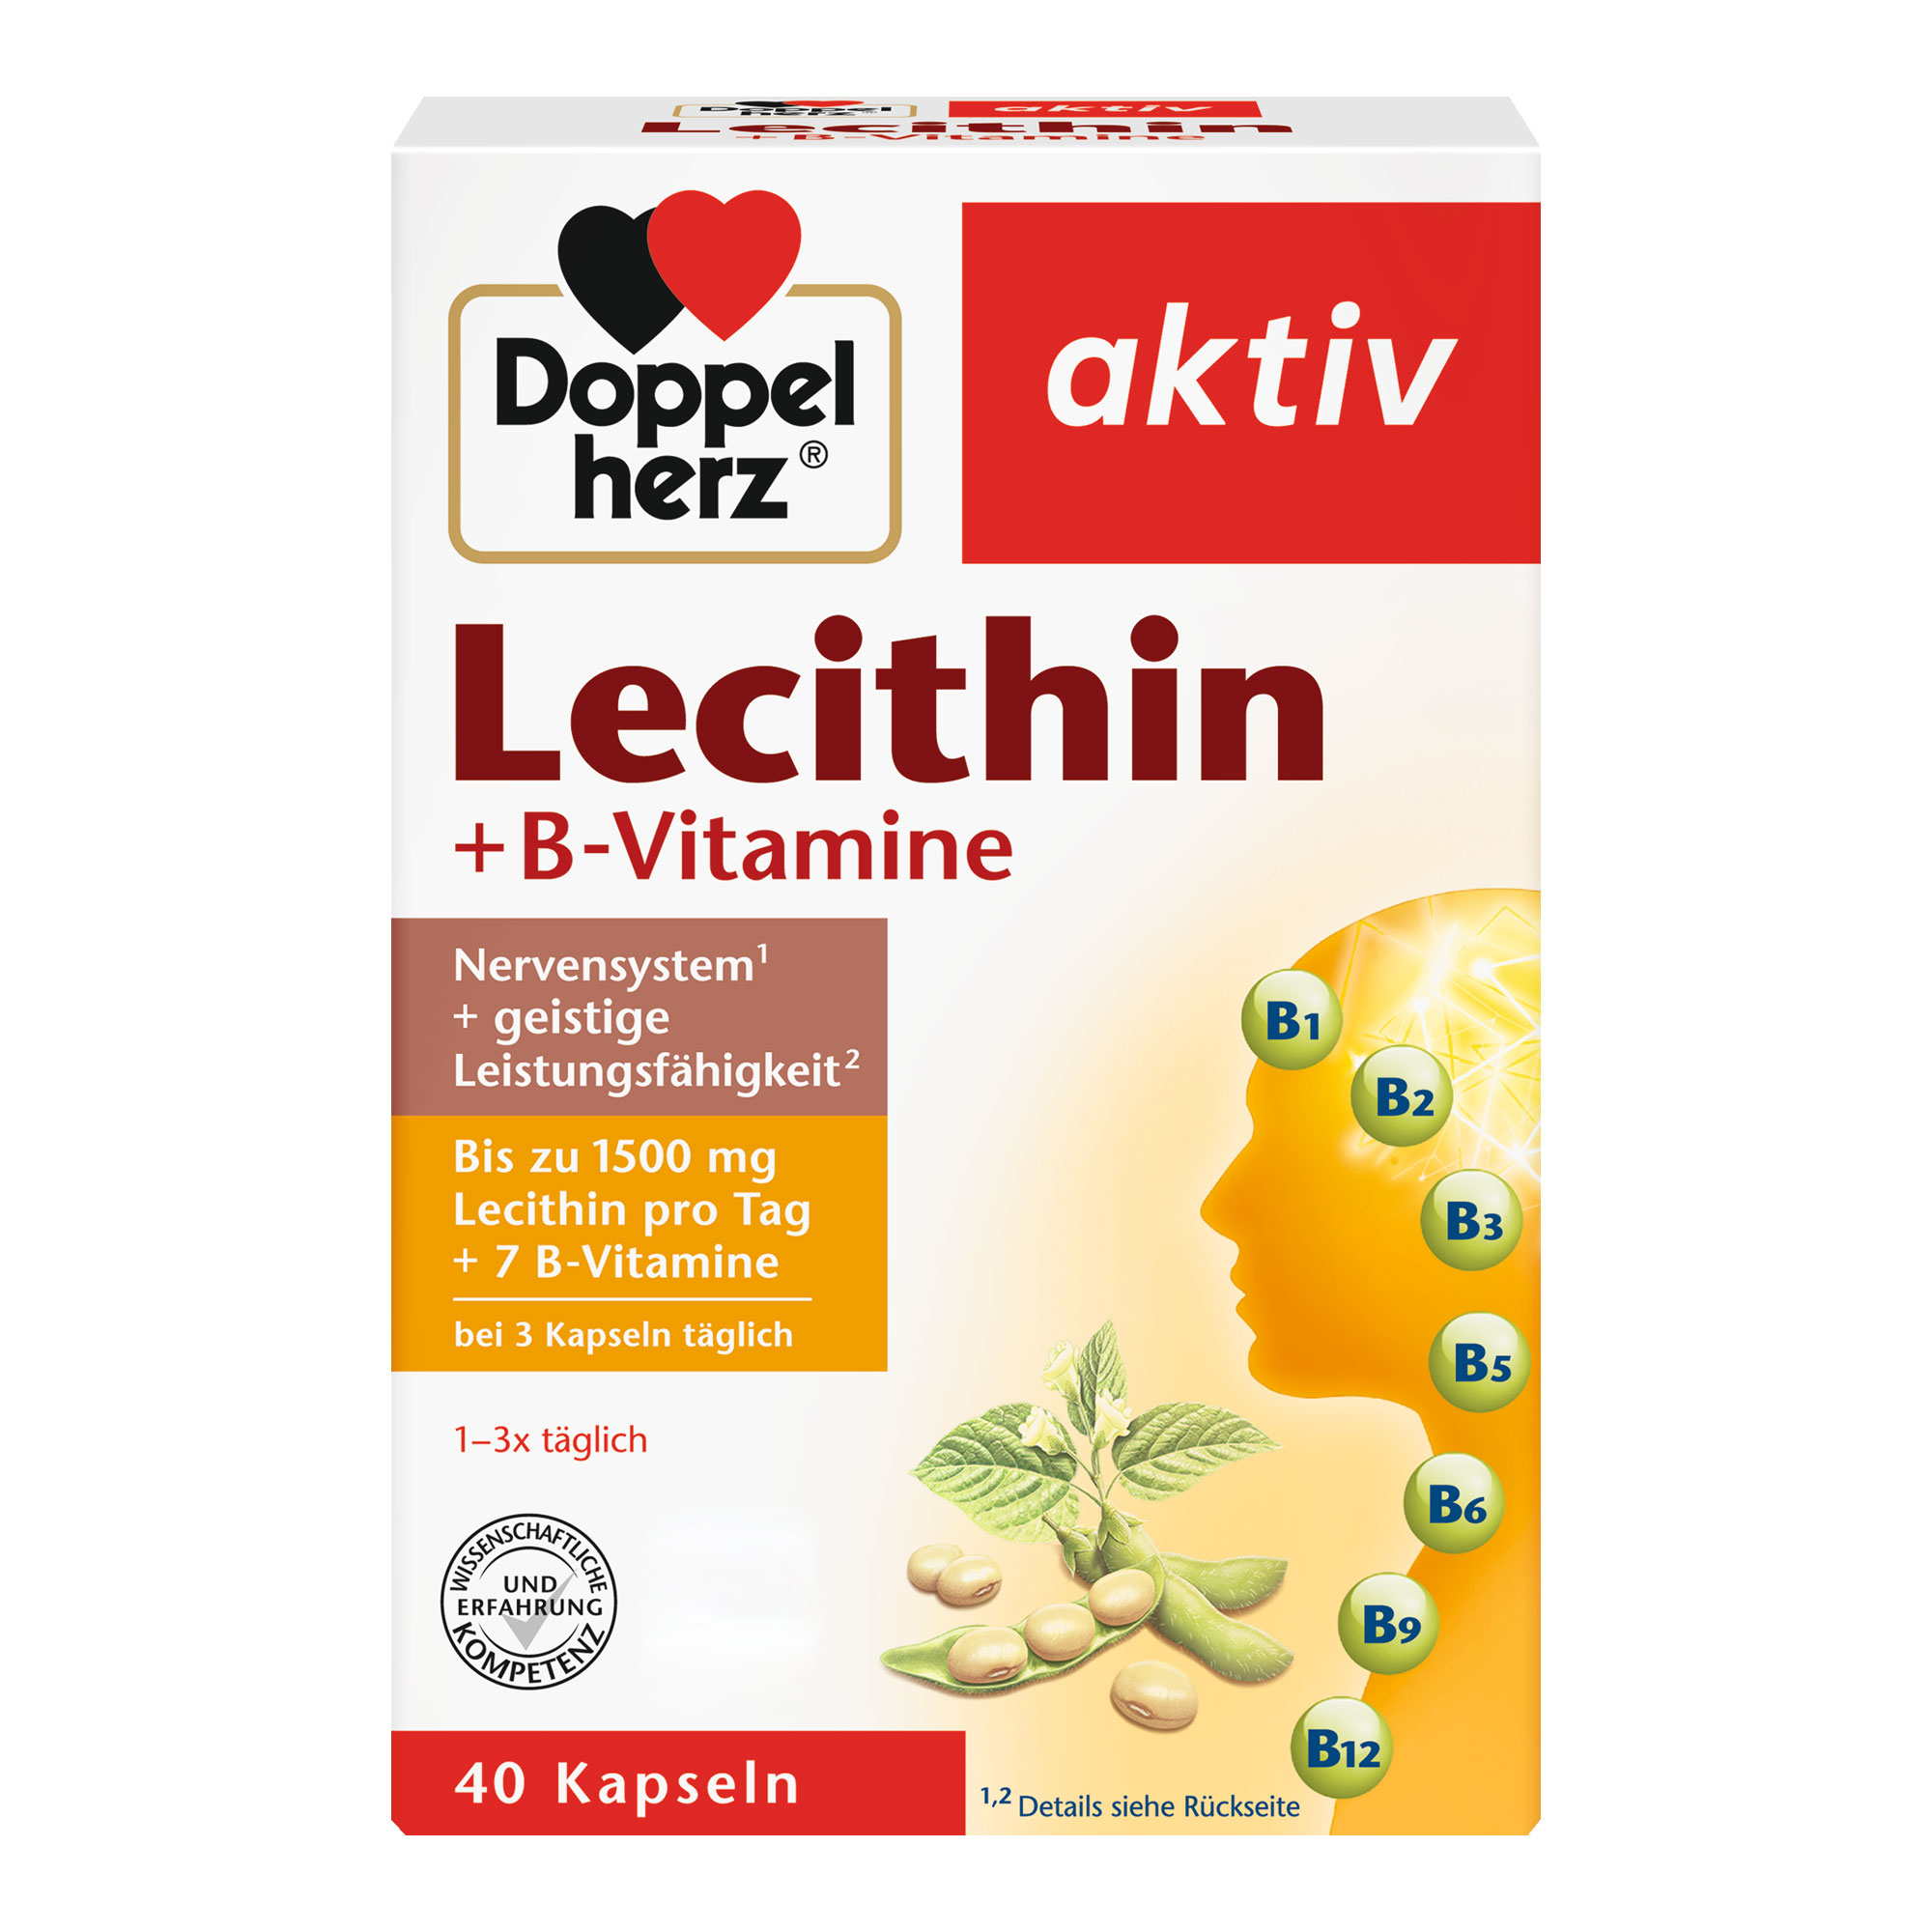 Nahrungsergänzungsmittel mit Lecithin, B-Vitaminen und Vitamin E.